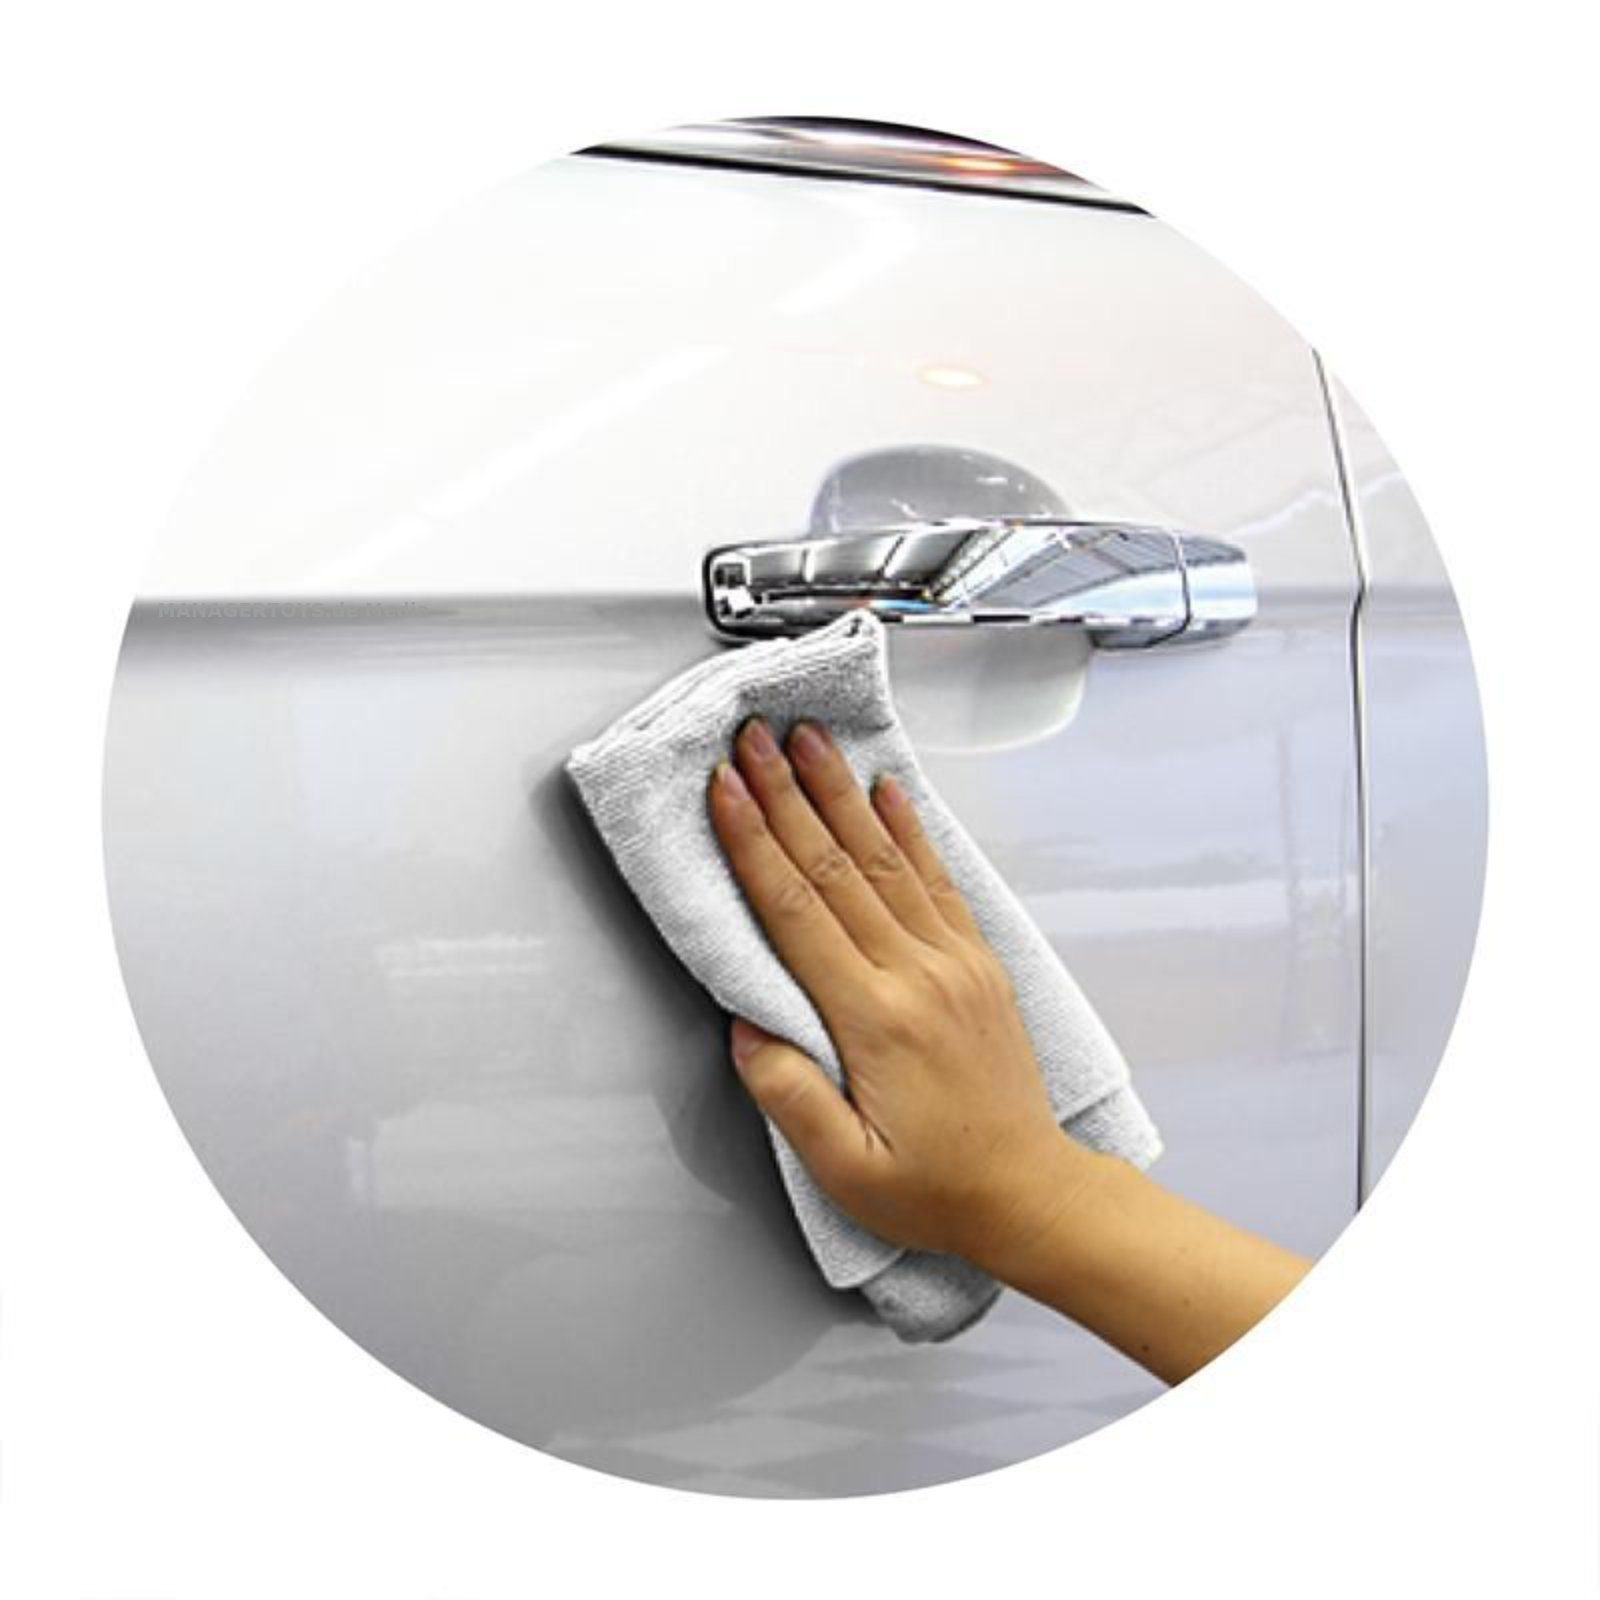 3er drei CARE CAR Auto Putztücher Set große Mikrofasertuch Set mit Handtuch IWH Beschriftung